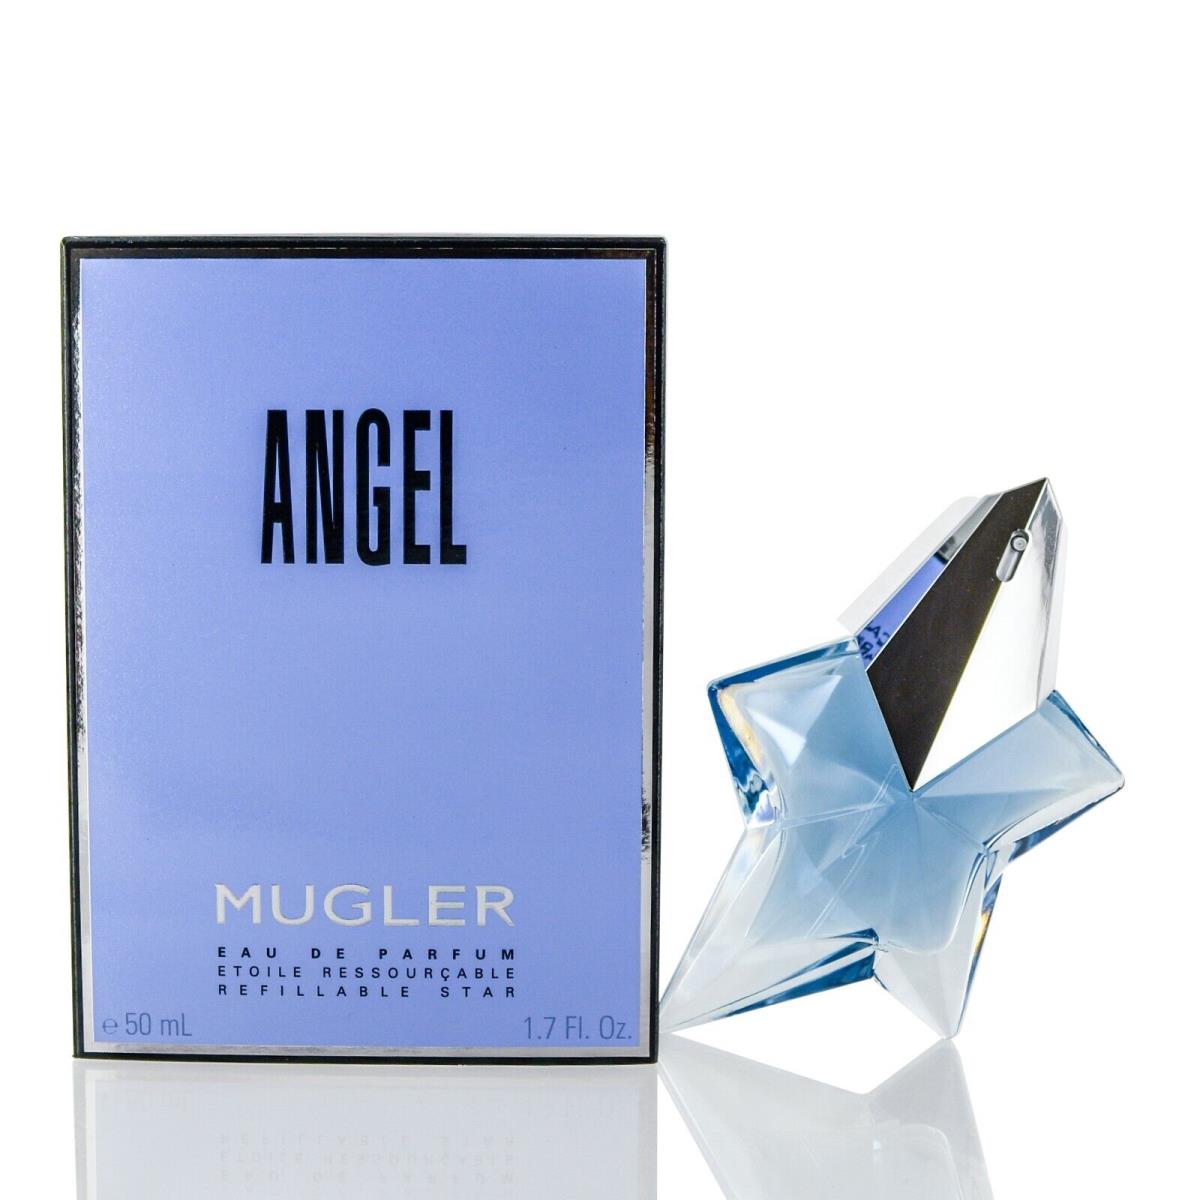 Angel Mugler Edp Spray Refillable Star 1.7 OZ For Women